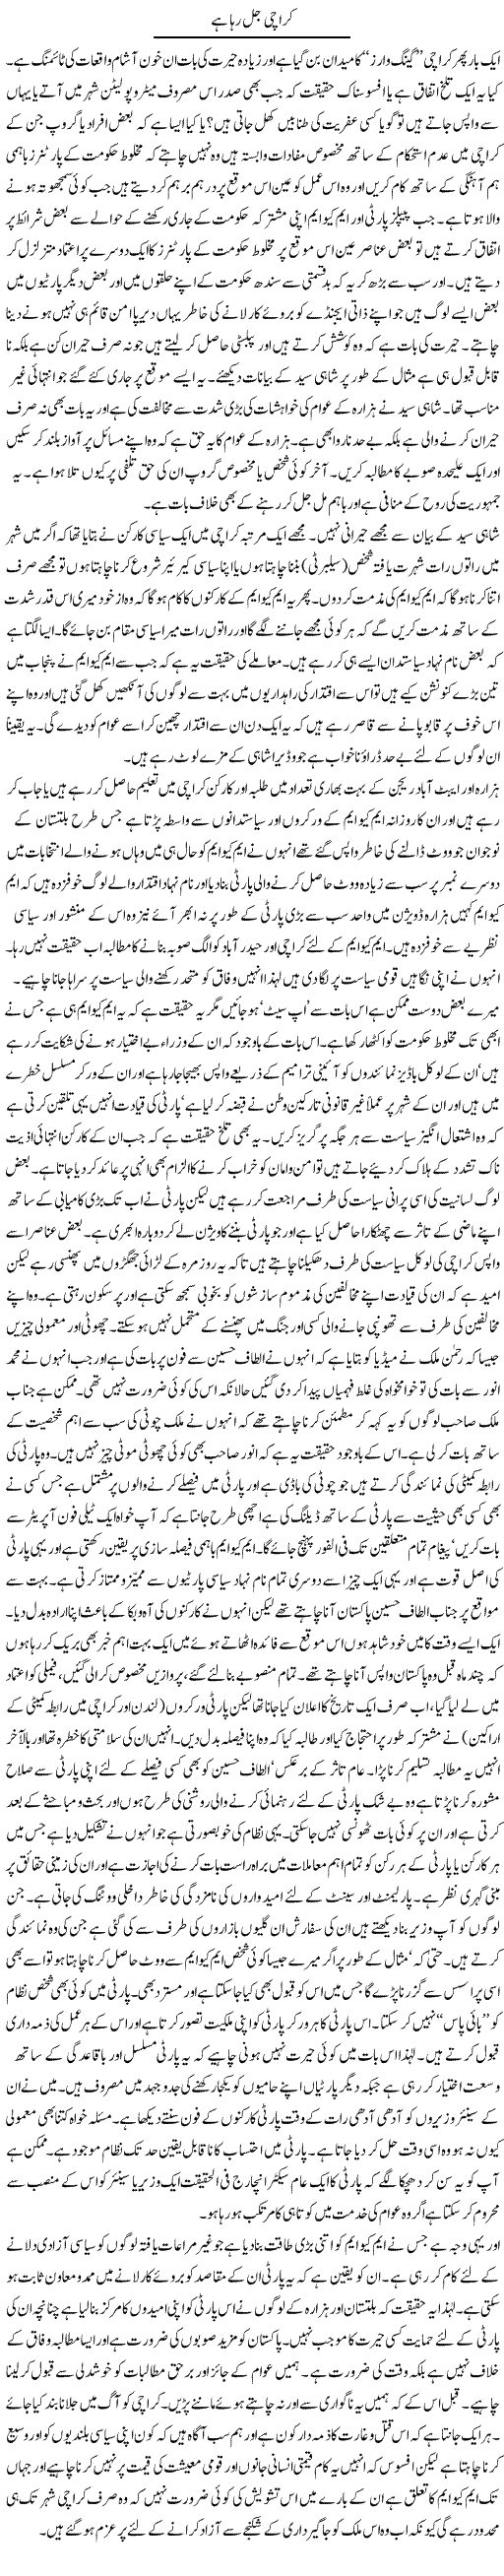 Karachi Jal raha Express Column Mubashir Luqman 22 May 2010